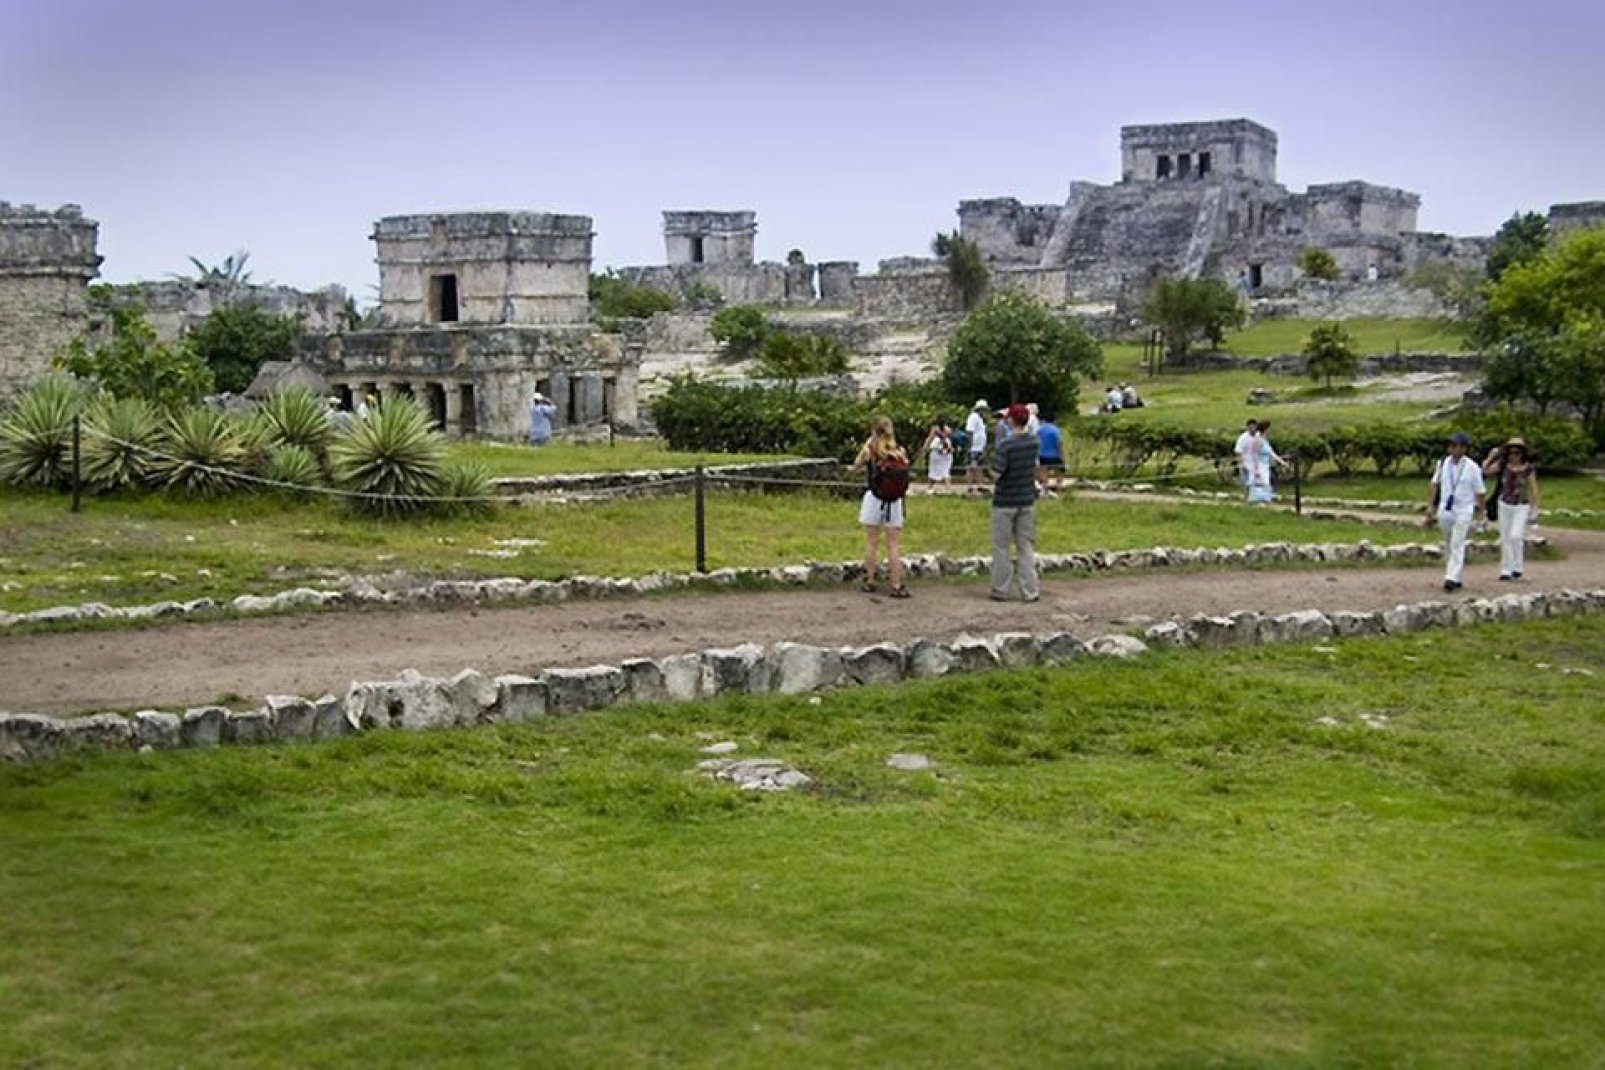 Le rovine di Tulum sono le meglio conservate di tutta la regione dello Yucatan.